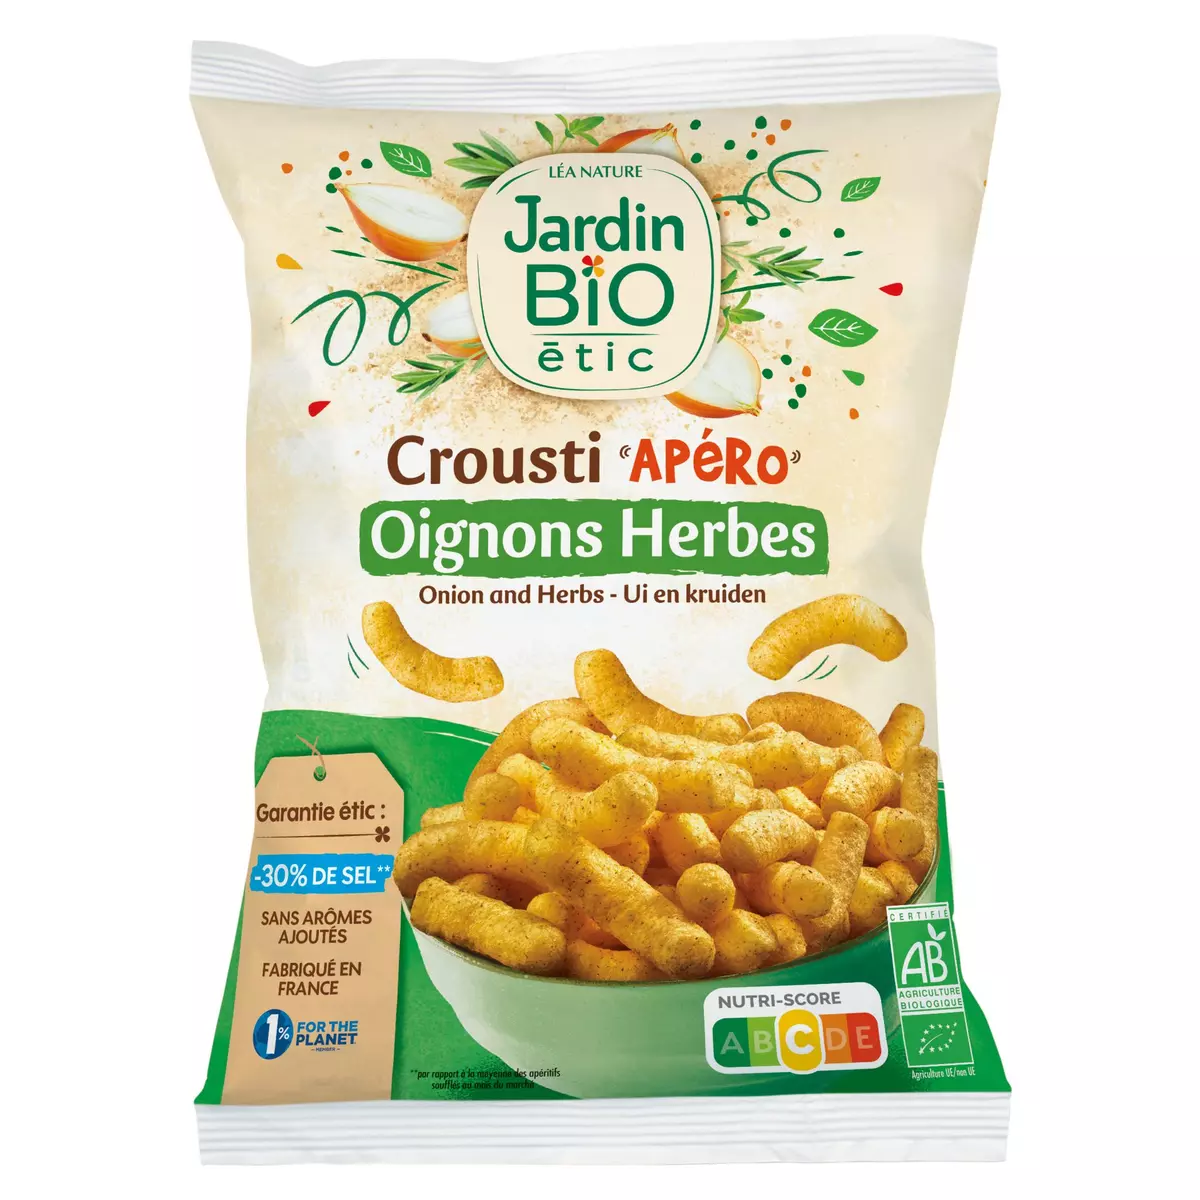 JARDIN BIO ETIC Biscuits soufflés oignons et herbes Crousti Apéro 85g